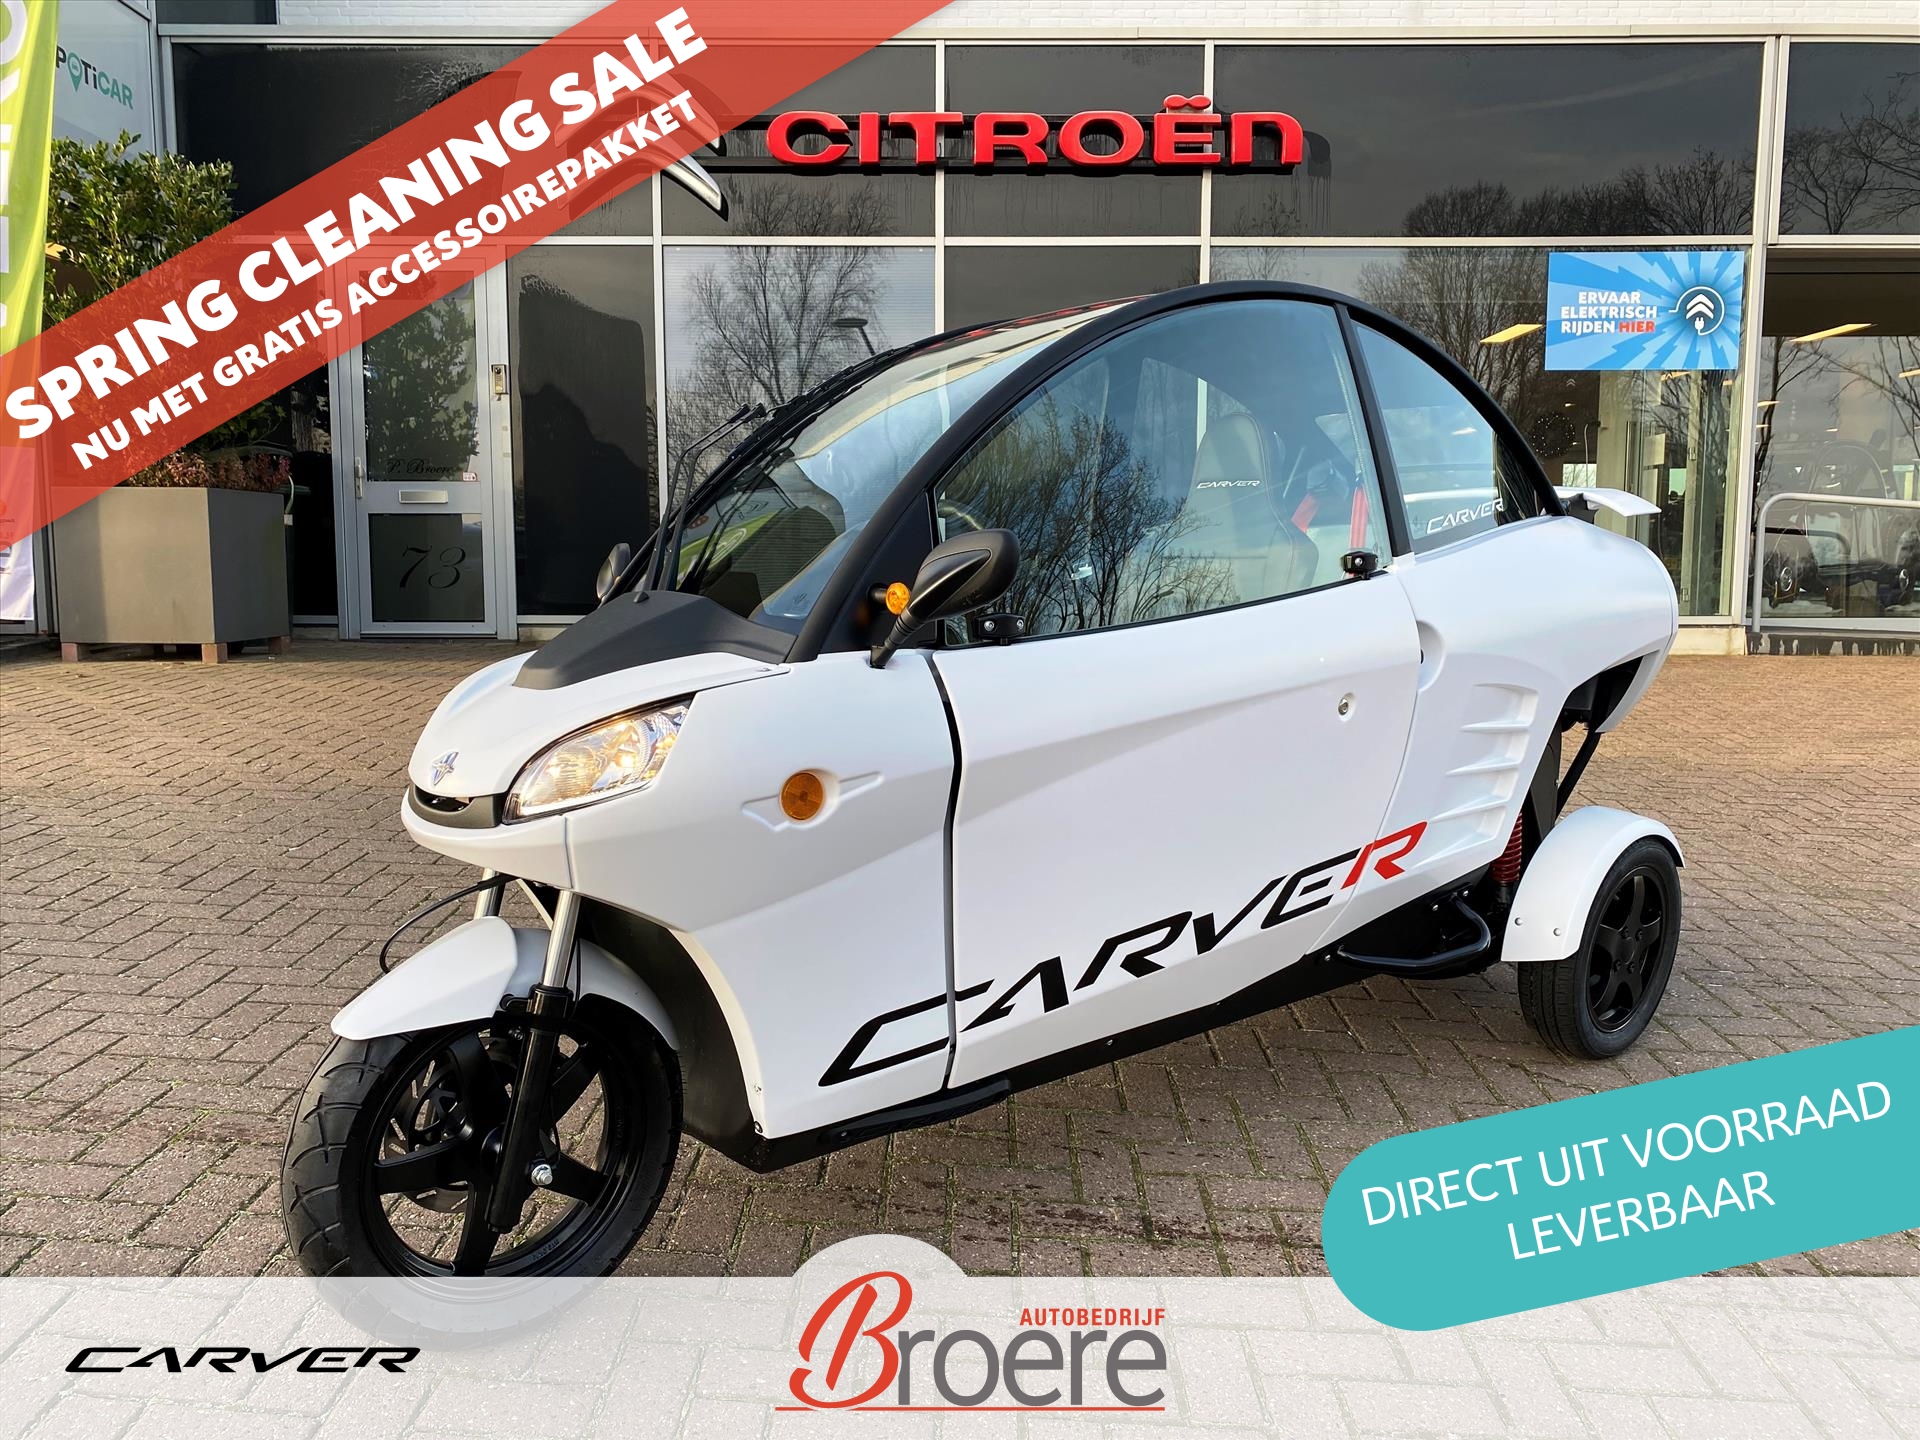 CARVER Carver Speed+ 80 km/u 7,1 kWh *nieuw* | SPRING CLEANING SALE: gratis accessoirepakket, direct leverbaar! bij viaBOVAG.nl